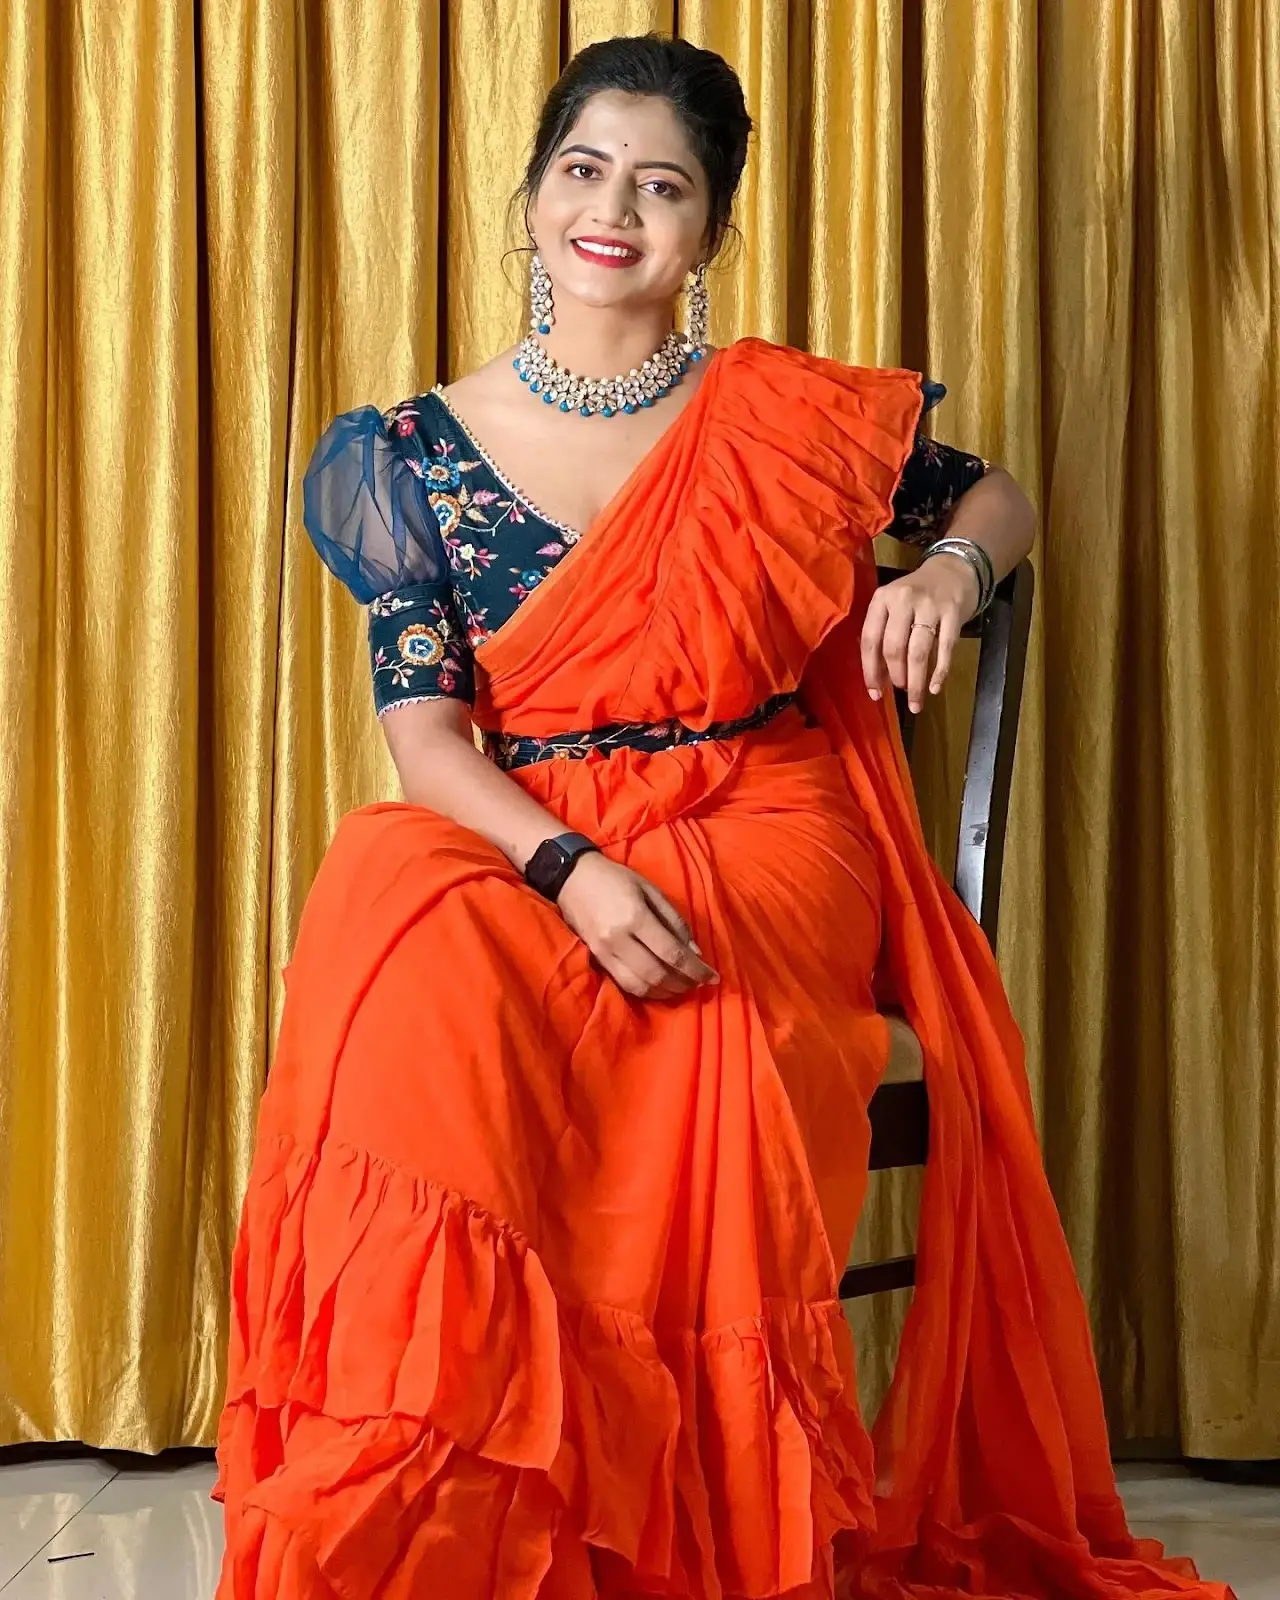 INDIAN TV ACTRESS SHIVA JYOTHI STILLS IN TRADITIONAL ORANGE SAREE 1